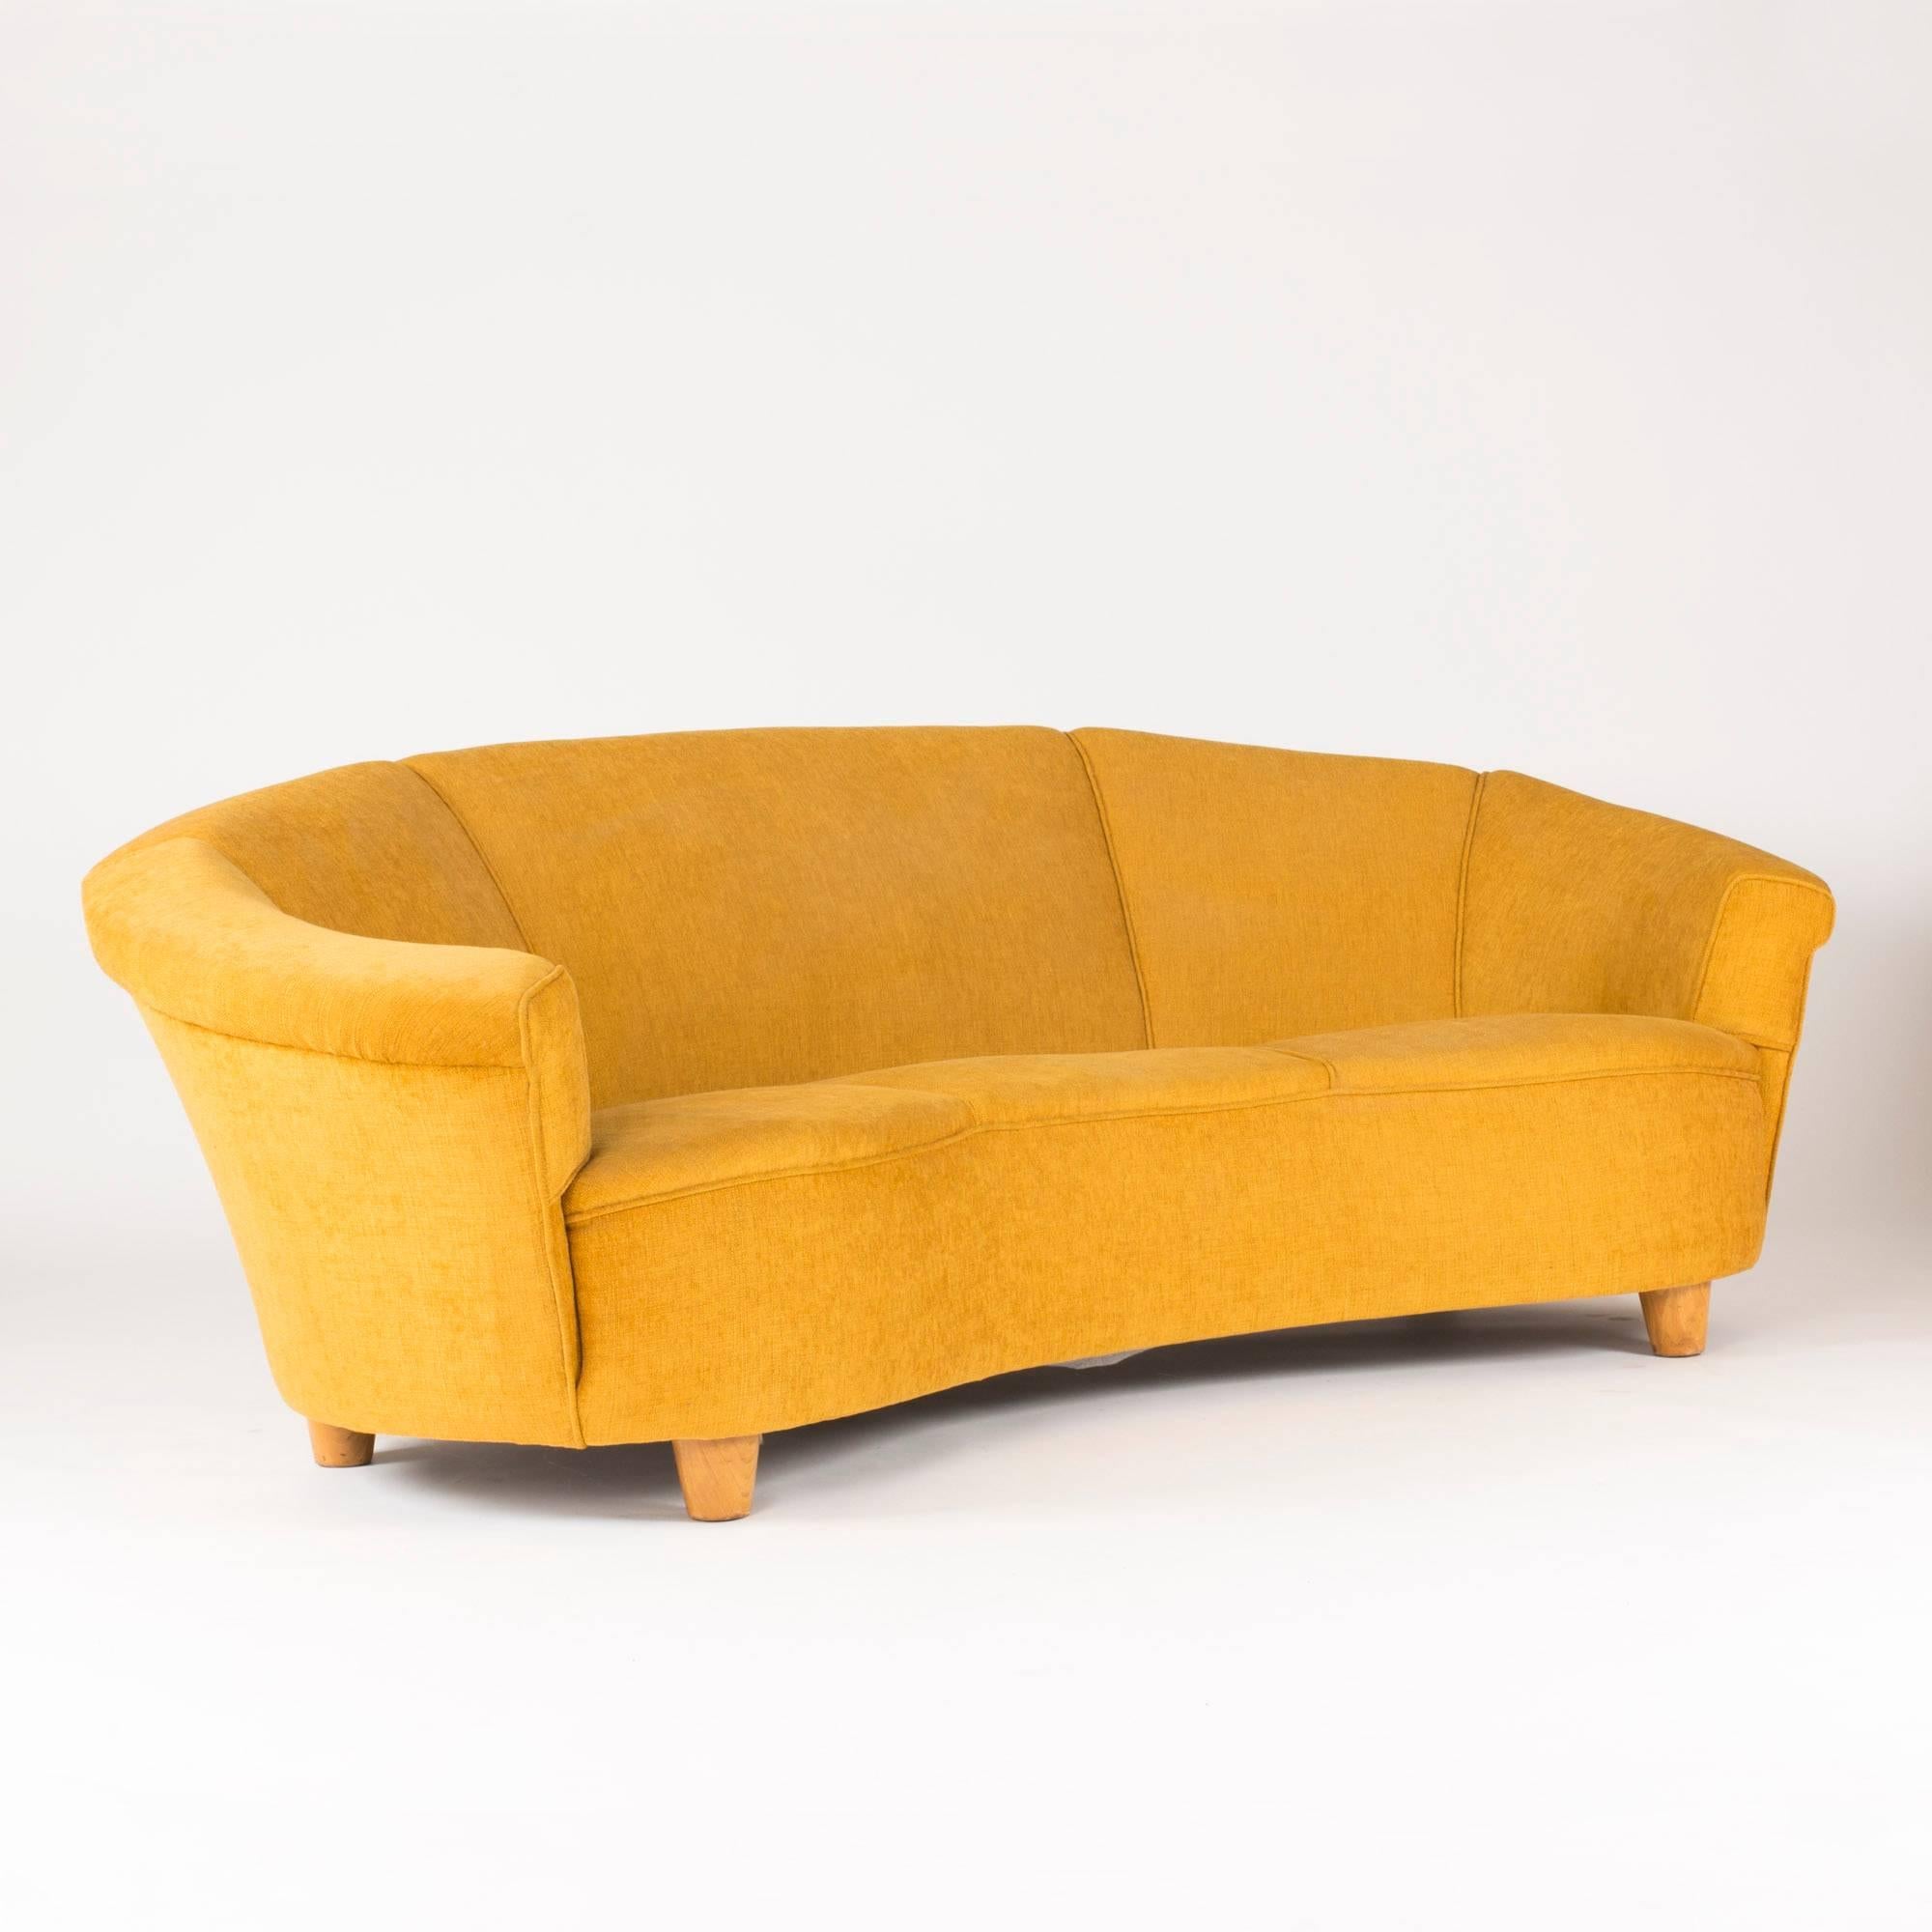 Canapé luxueux et volumineux à la forme courbée et accueillante, avec un revêtement jaune moutarde. Dans le style d'Otto Schulz. Hauteur du siège 43 cm.